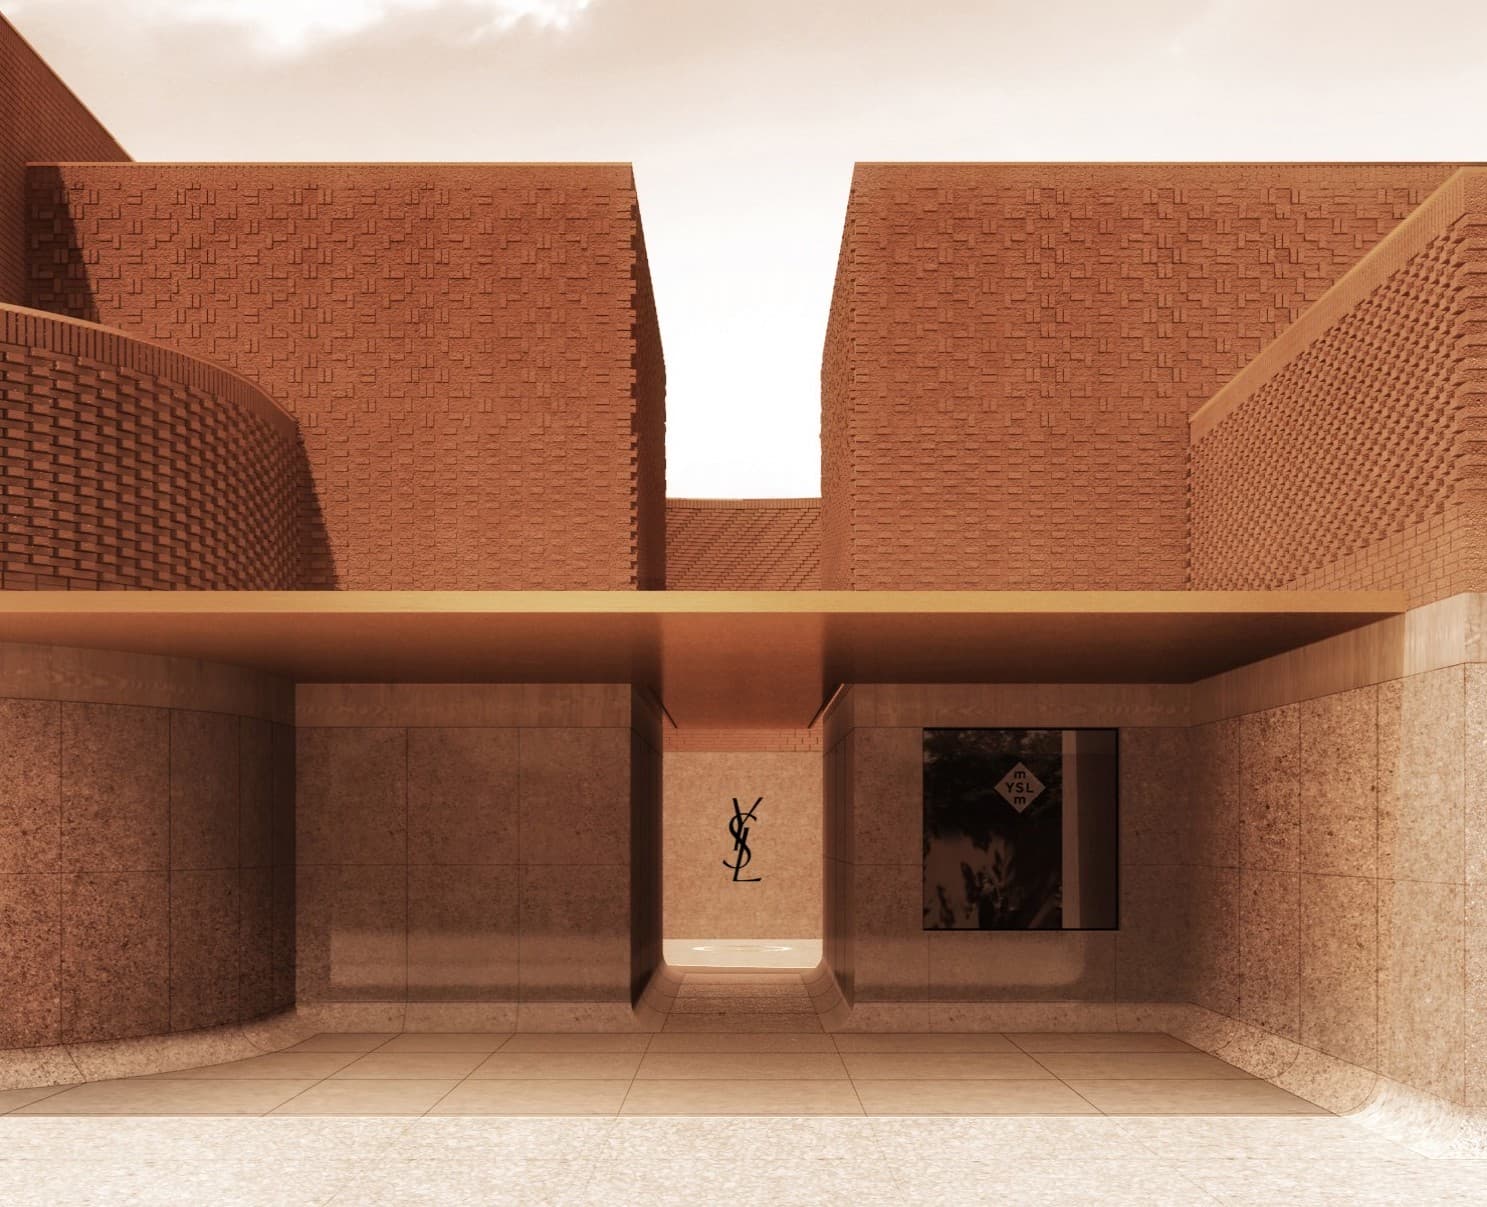 Yves Saint Laurent Museum in Marrakech